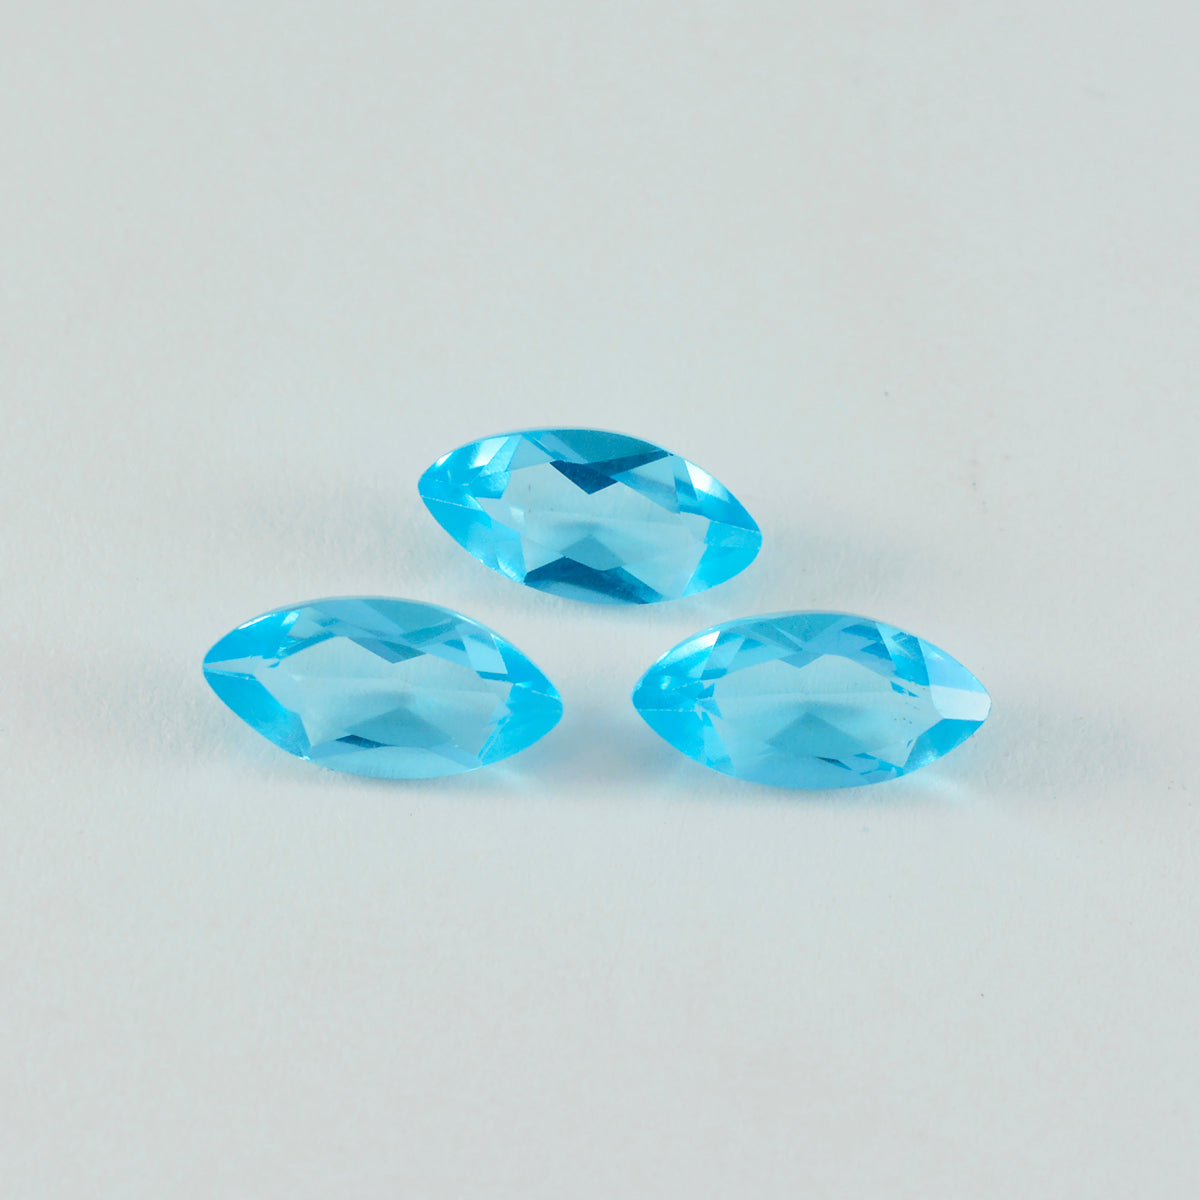 Riyogems 1 pieza de topacio azul CZ facetado 0.118 x 0.197 in forma ovalada A+1 piedra preciosa suelta de calidad